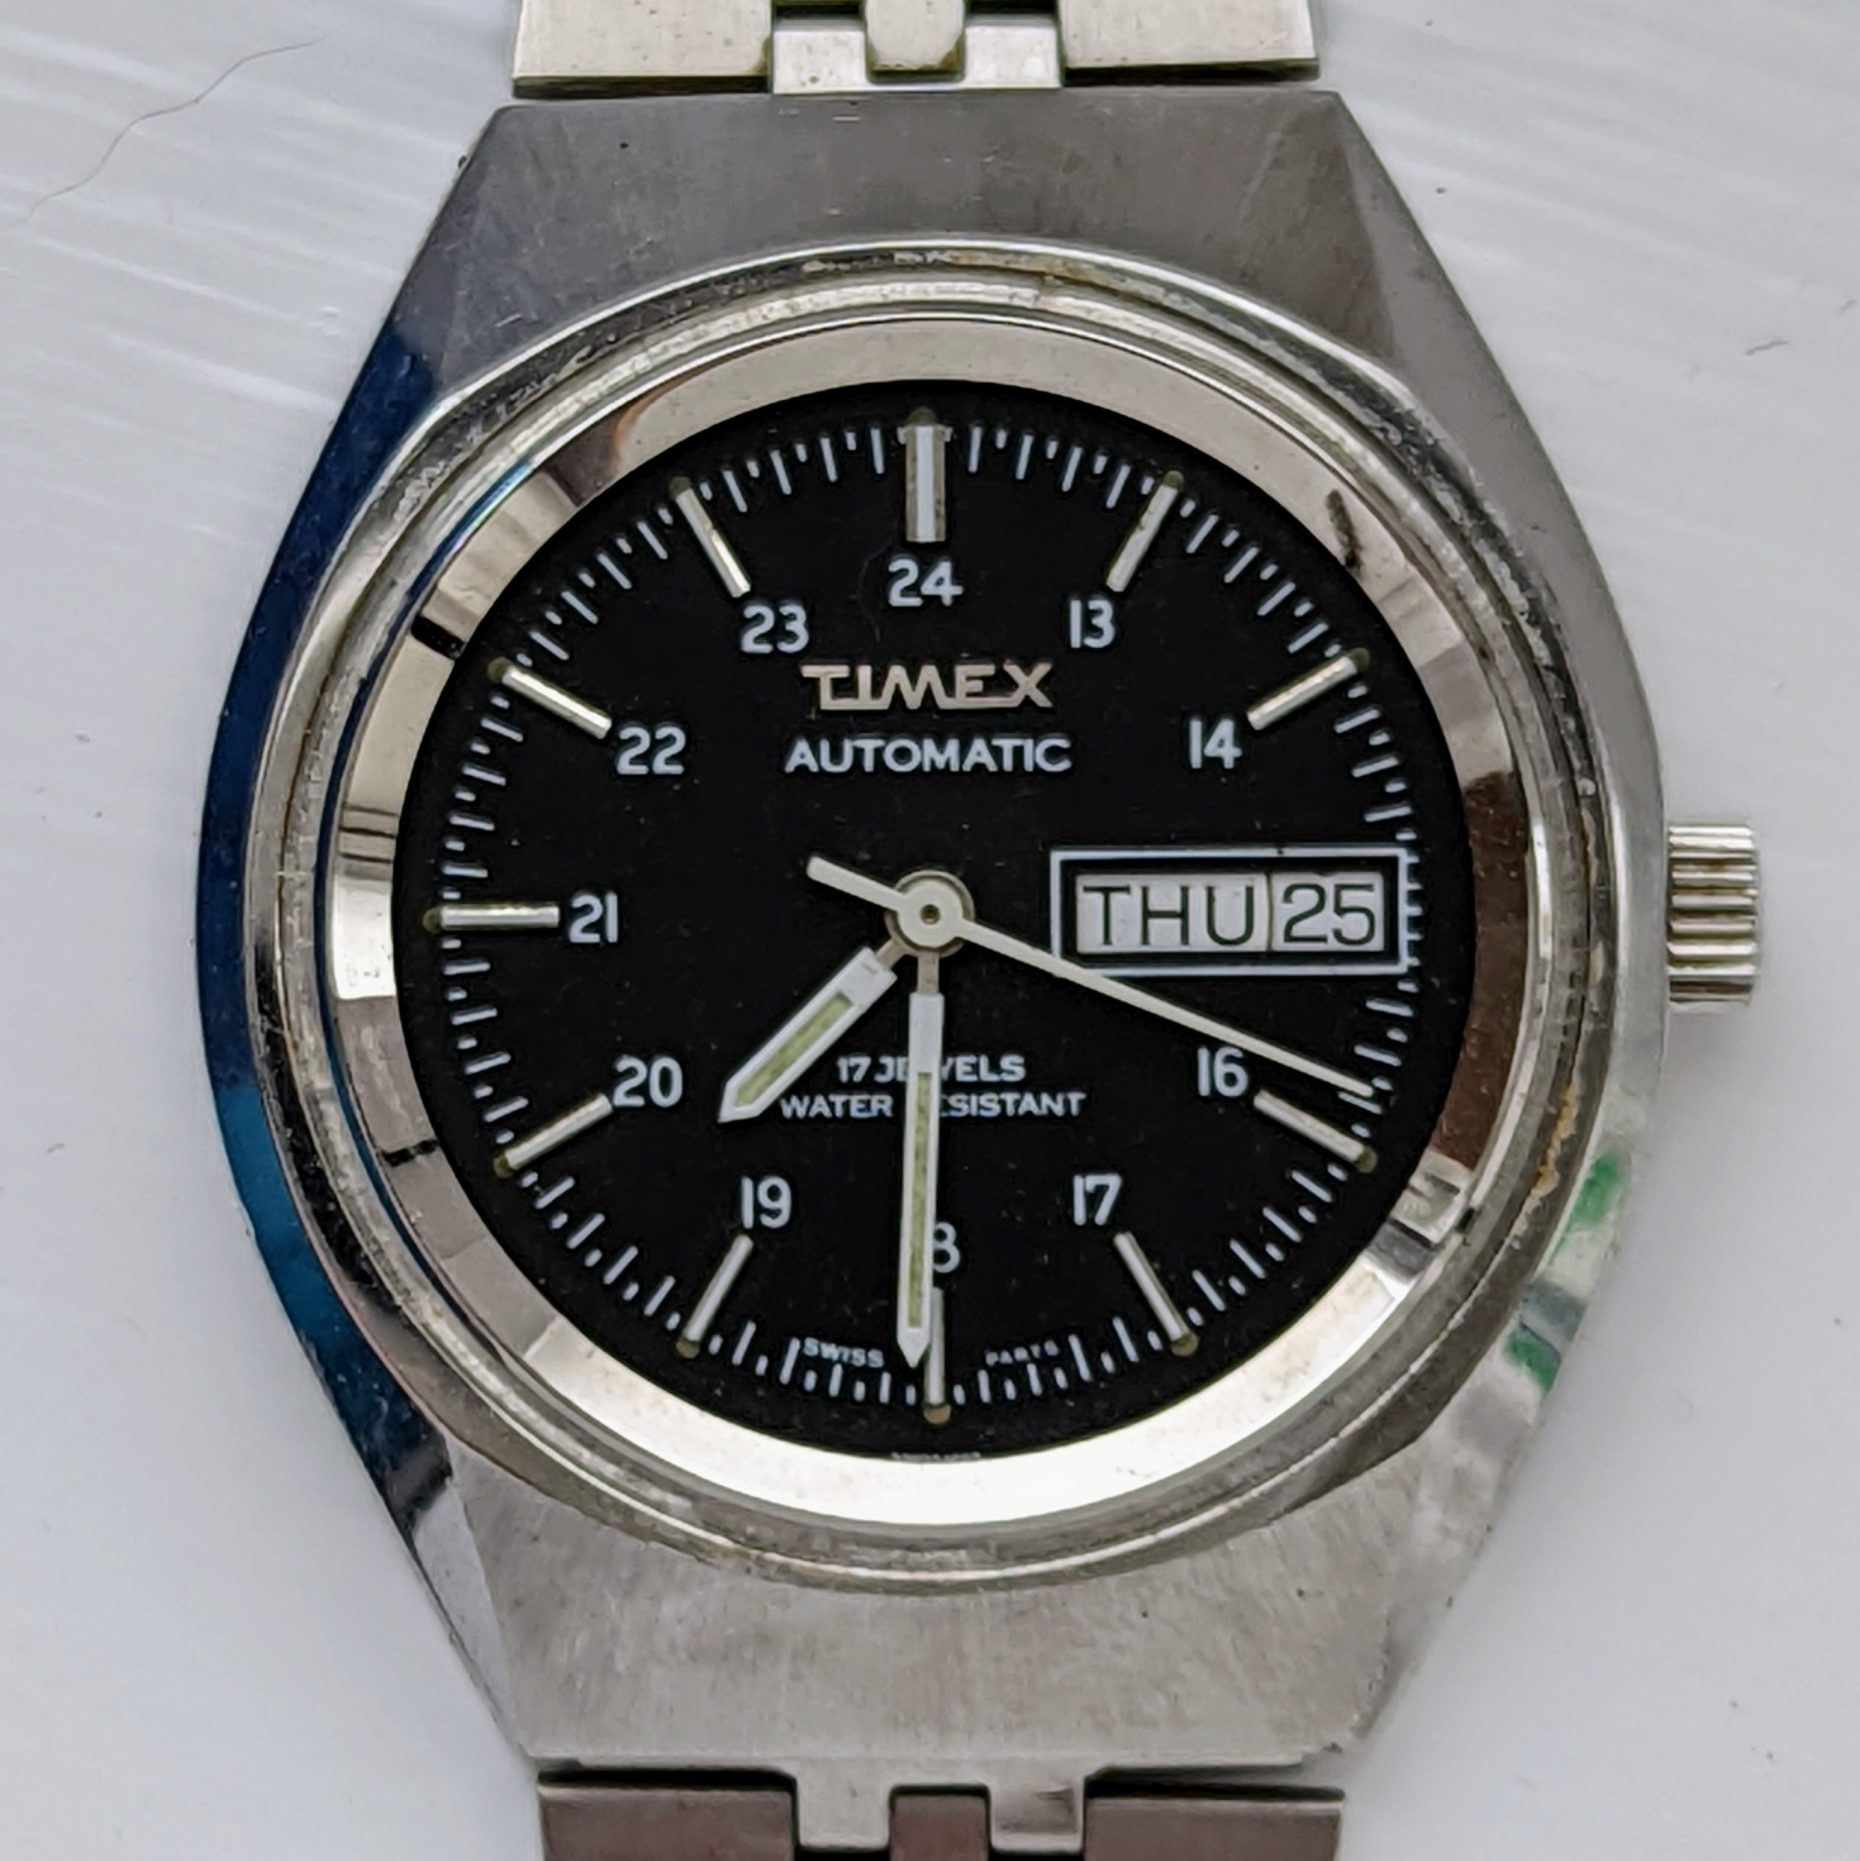 Timex 17 Jewels 1980’s